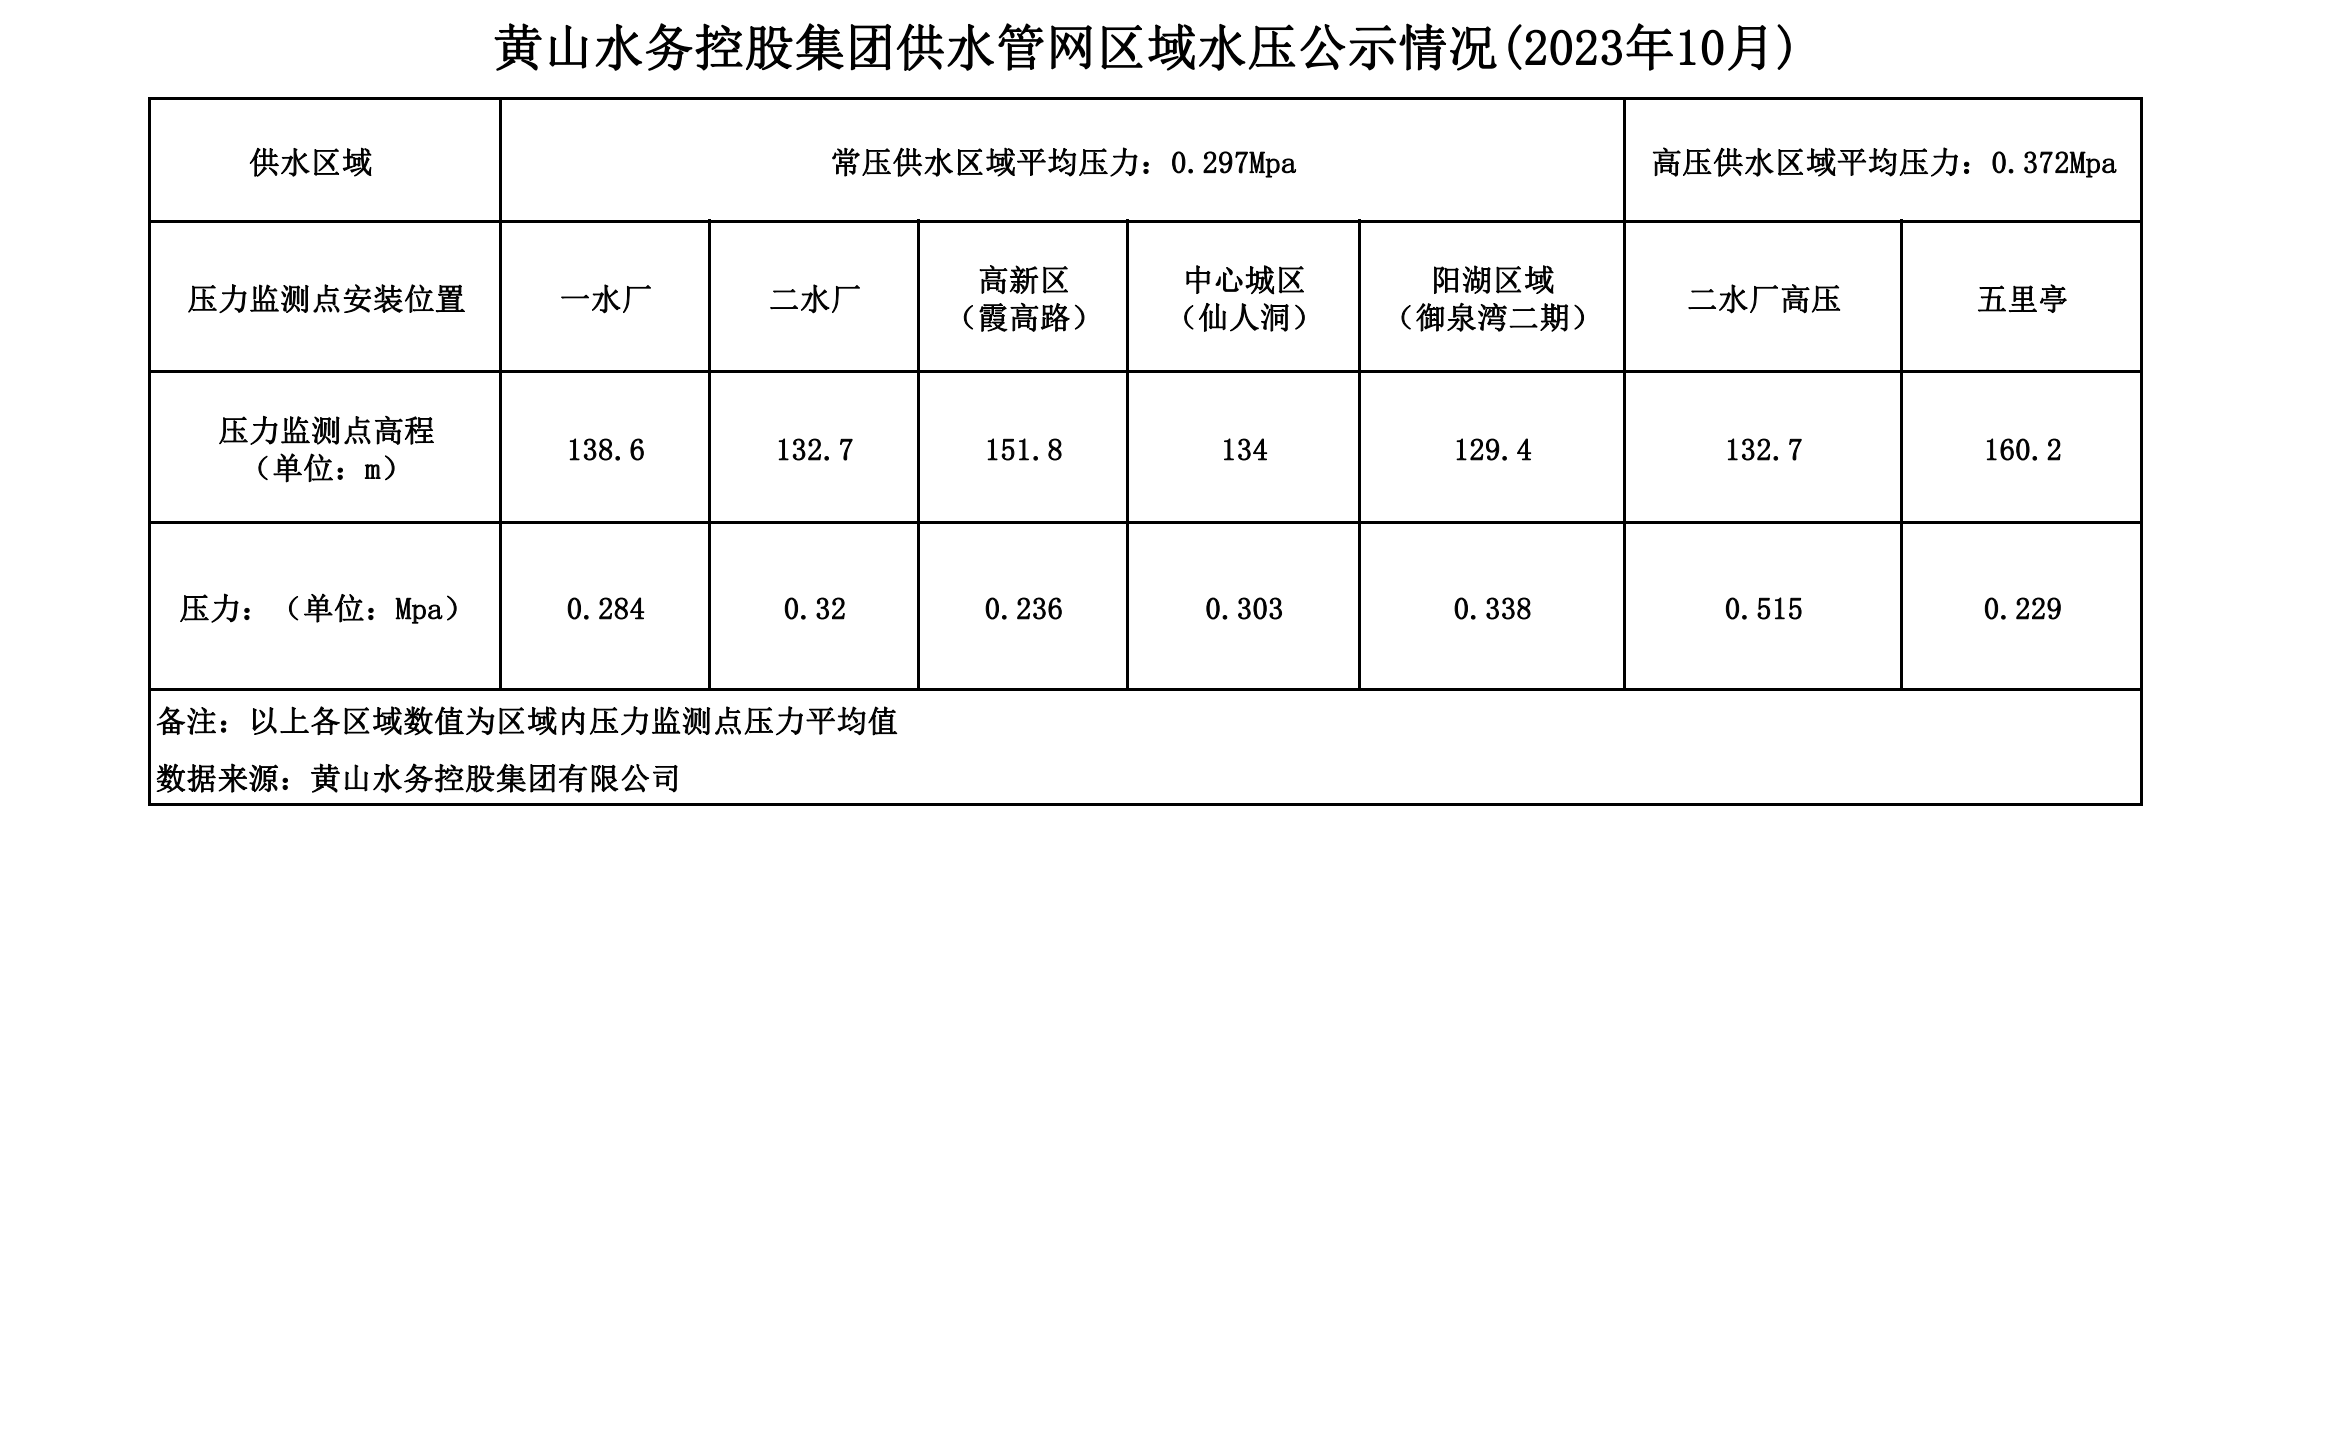 黄山水务控股集团供水管网区域水压公示情况(2023年10月)_00.png